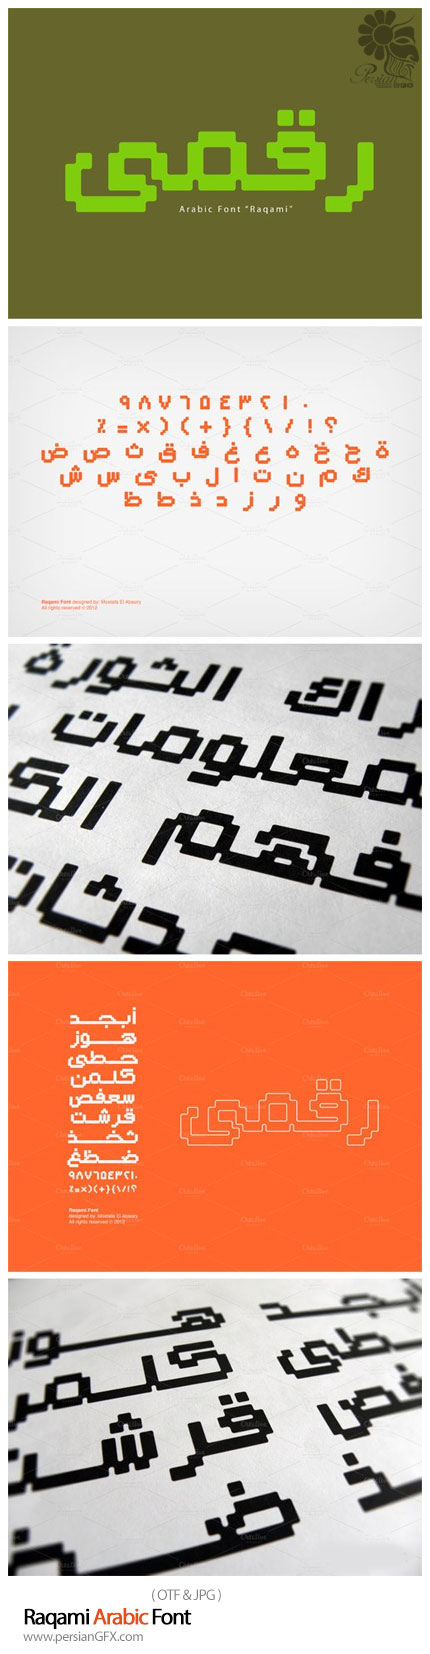 تحميل خطوط بيكسل عربية arabic pixel font 